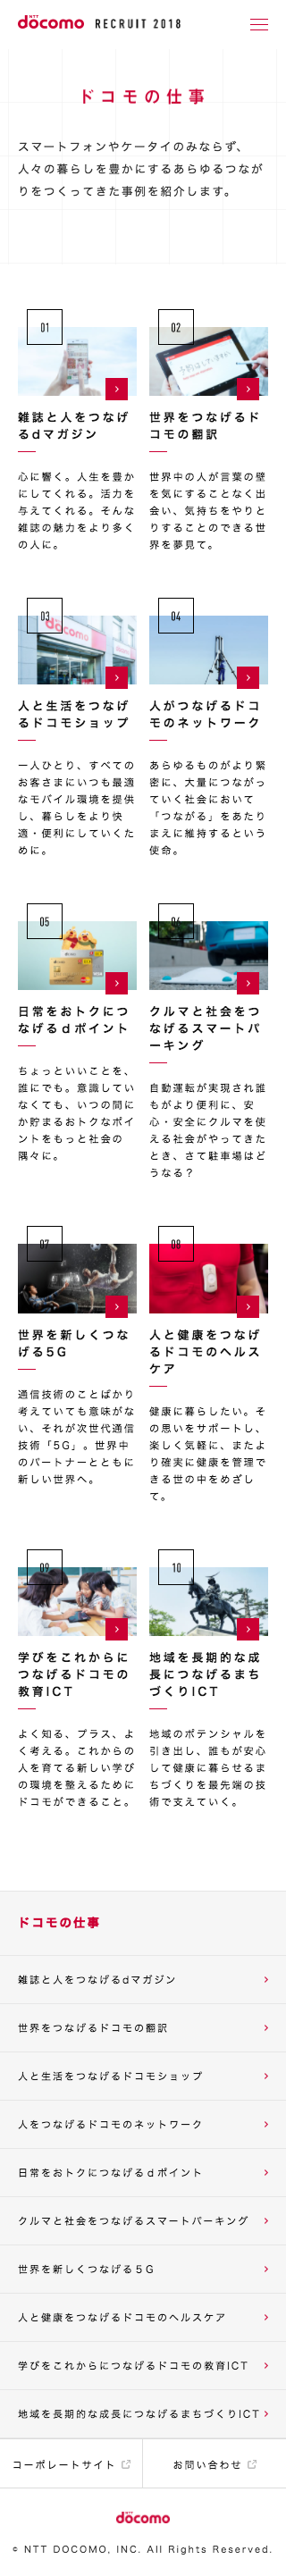 NTT docomo2018年度採用サイト